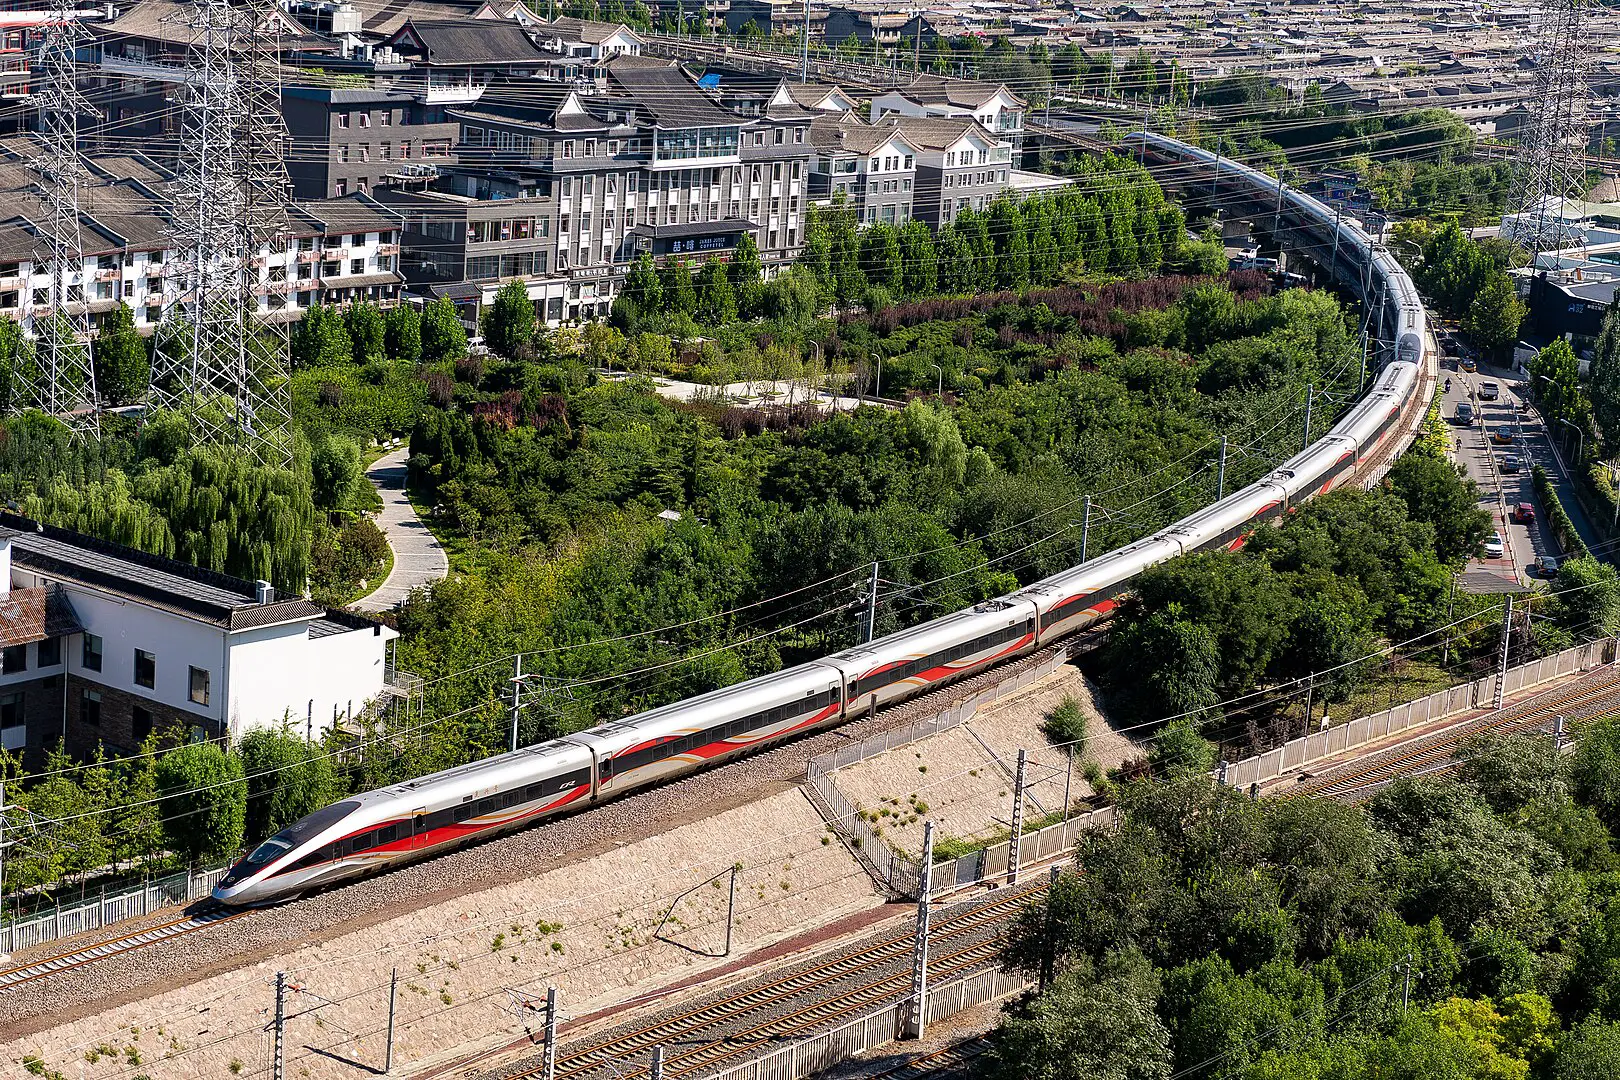 A 600 km/h, el nuevo tren Maglev de alta velocidad de China es el más rápido del mundo